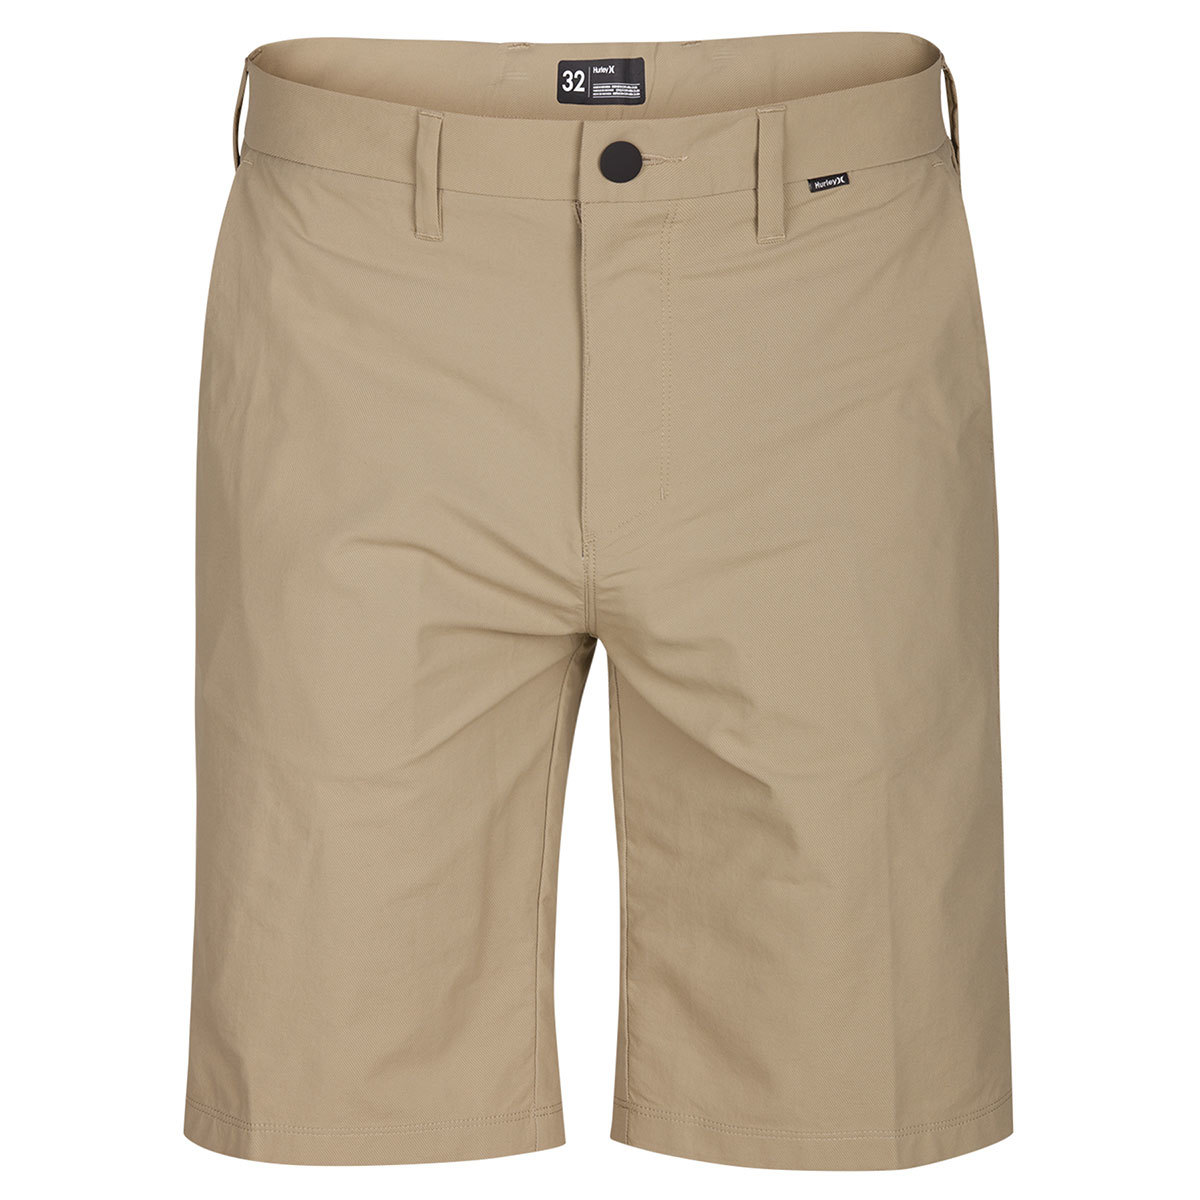 Hurley Guys' Dri-Fit Chino Shorts - Brown, 30